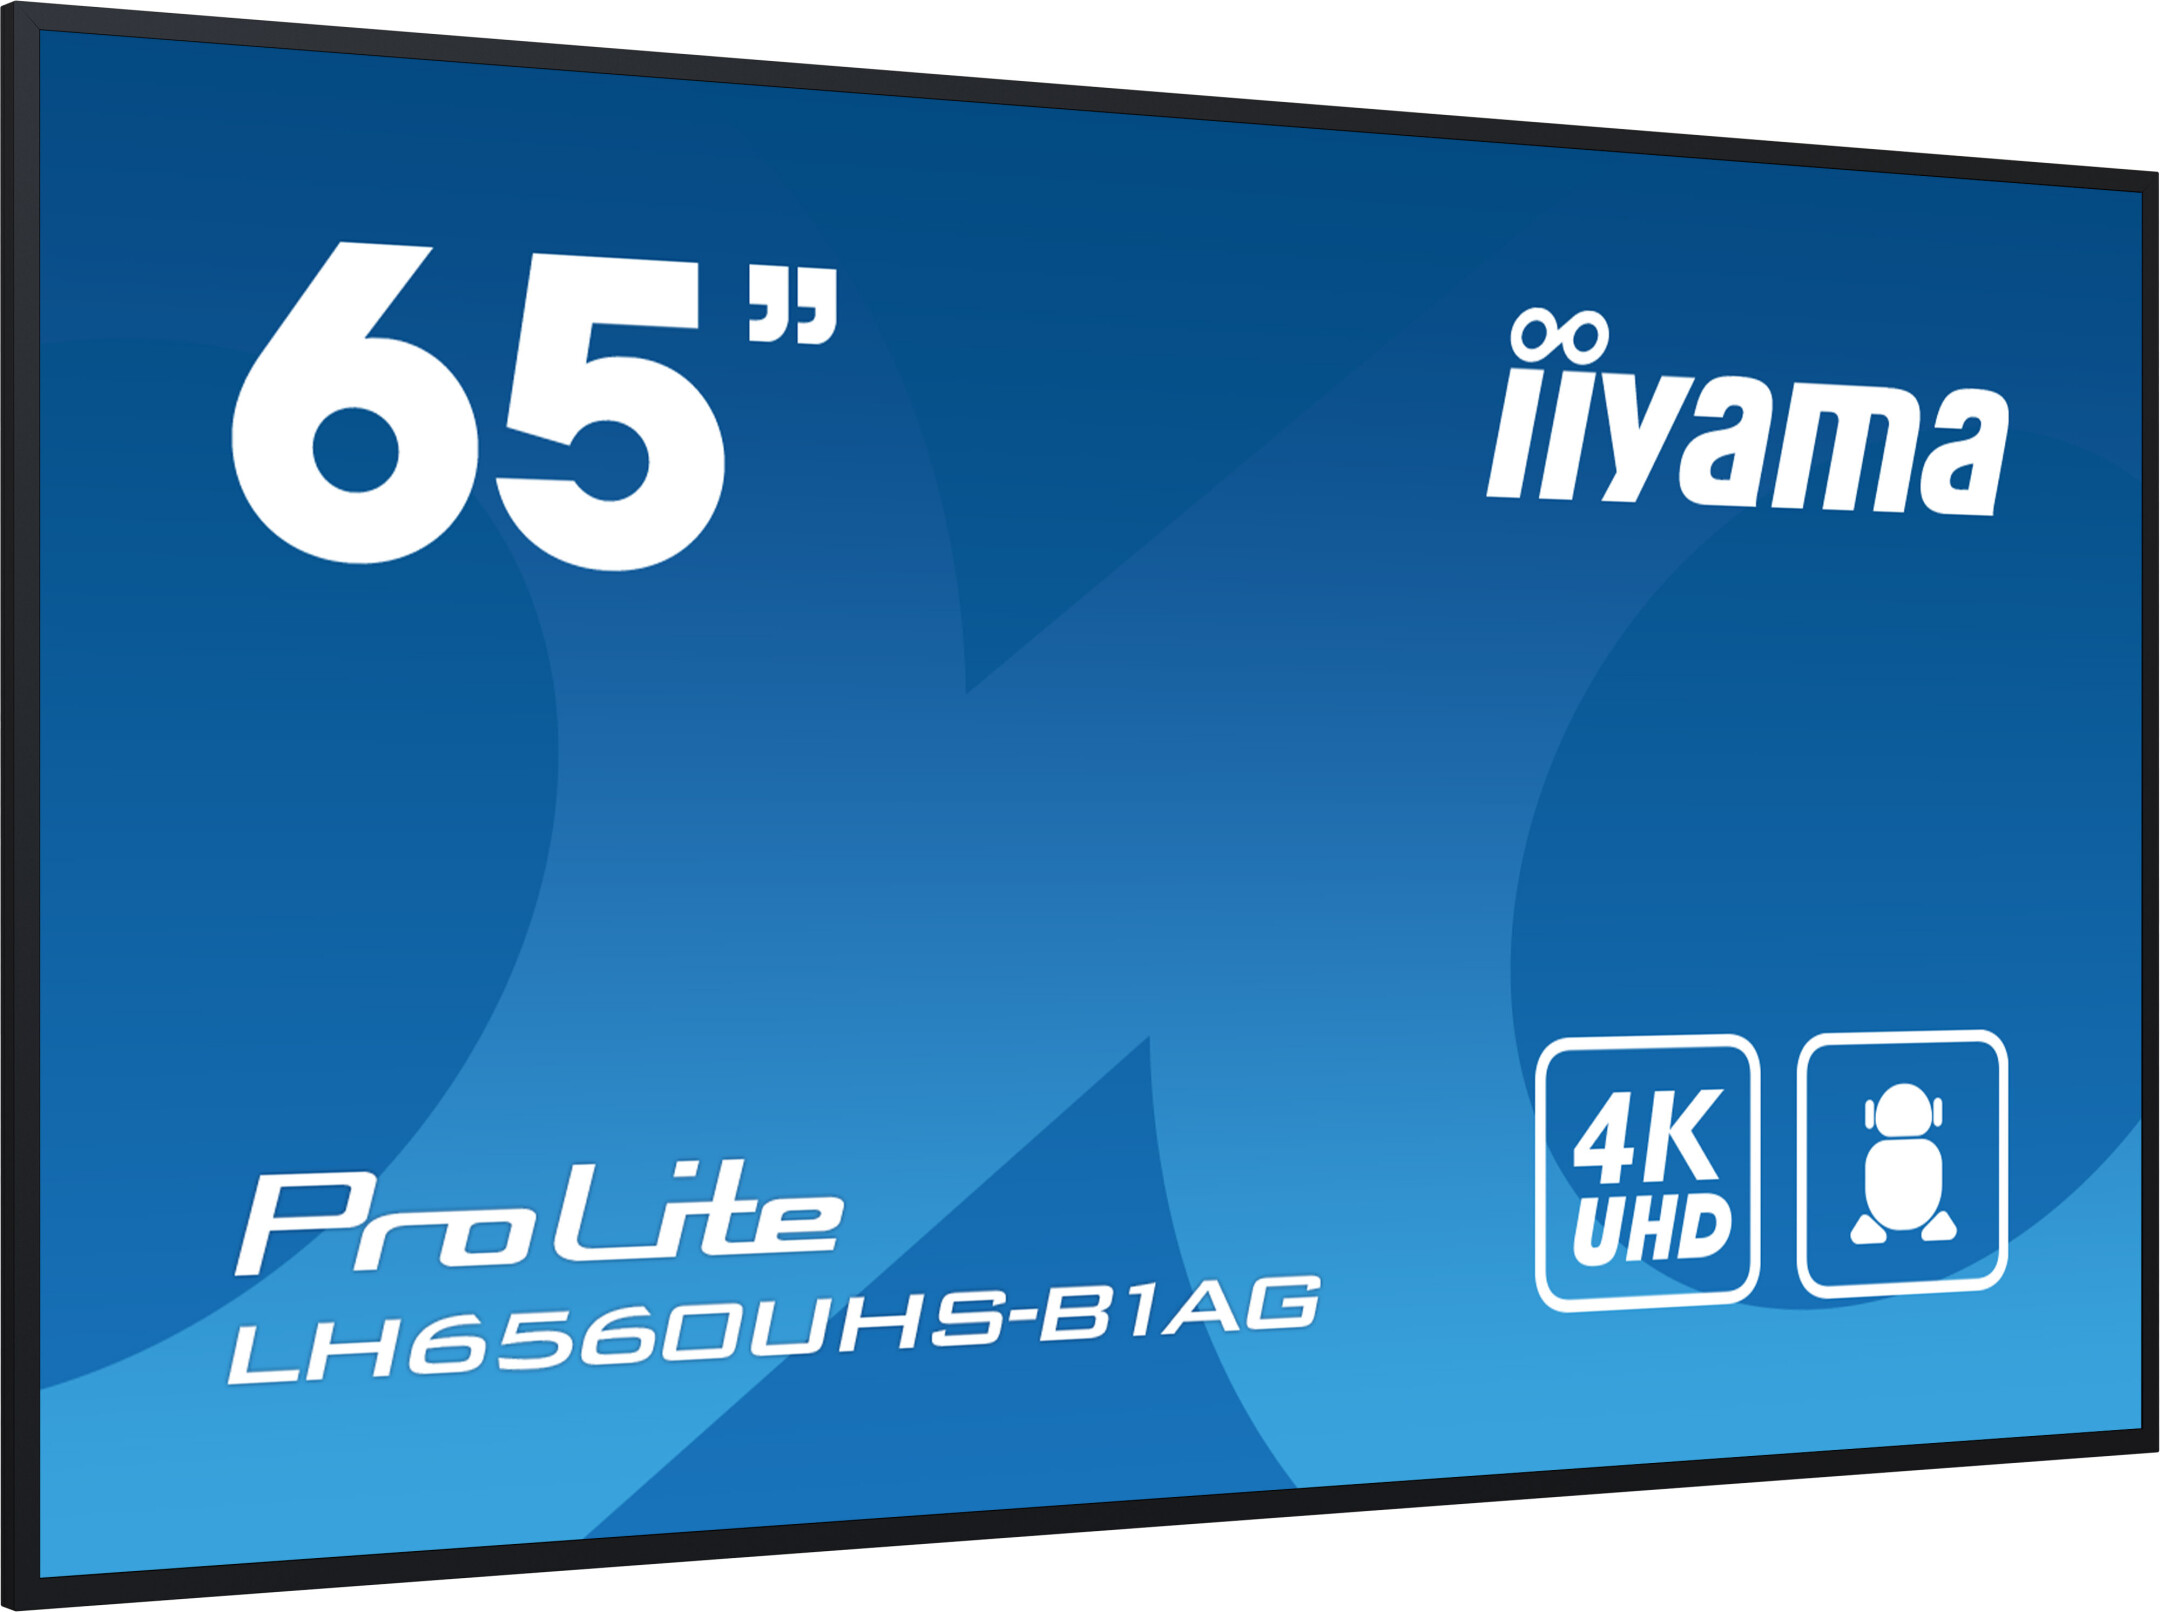 iiyama-PROLITE-LH6560UHS-B1AG